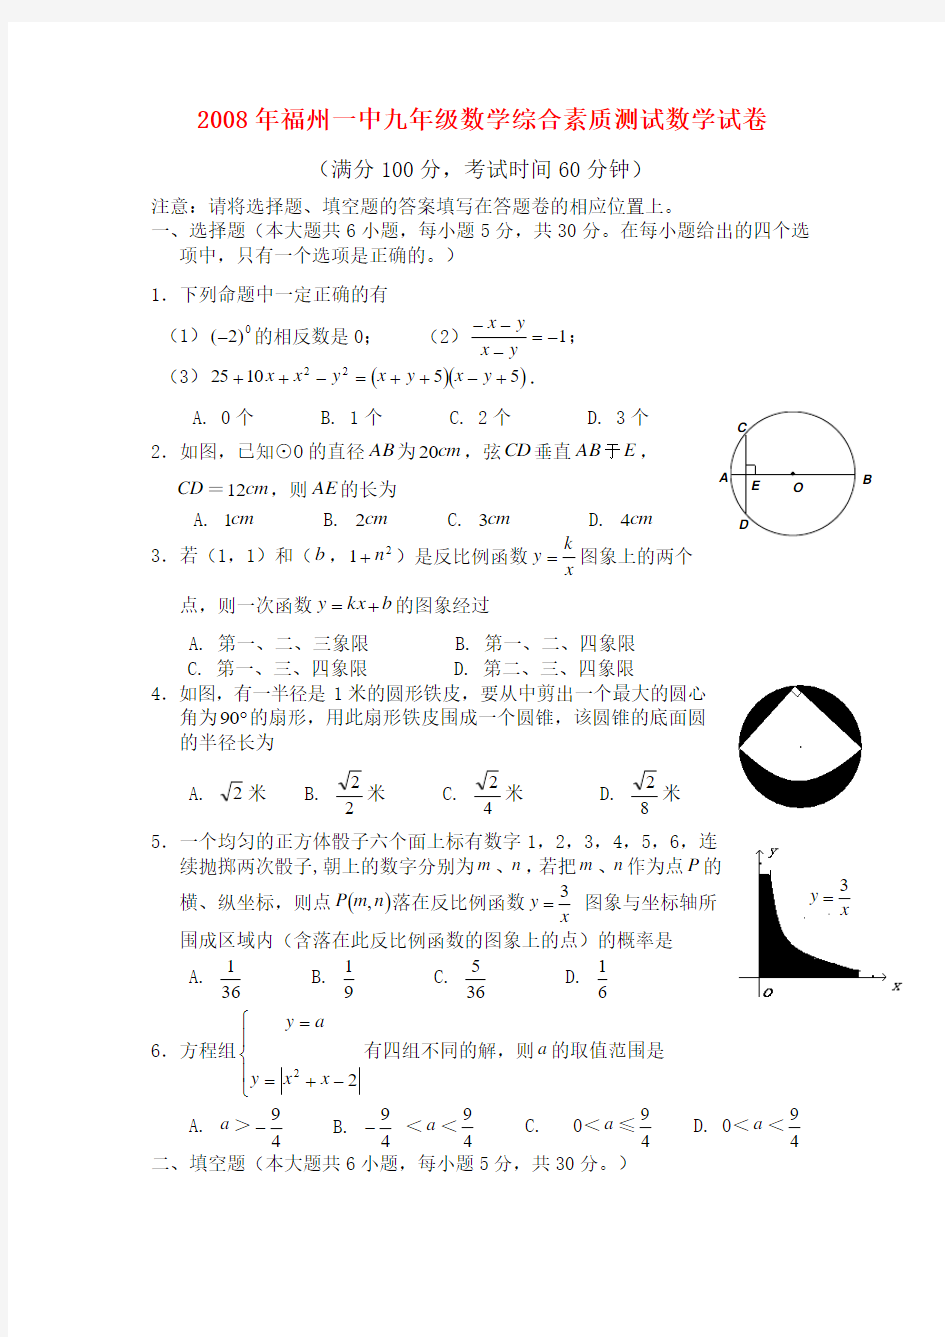 福建省福州一中九年级数学综合素质测试数学试卷